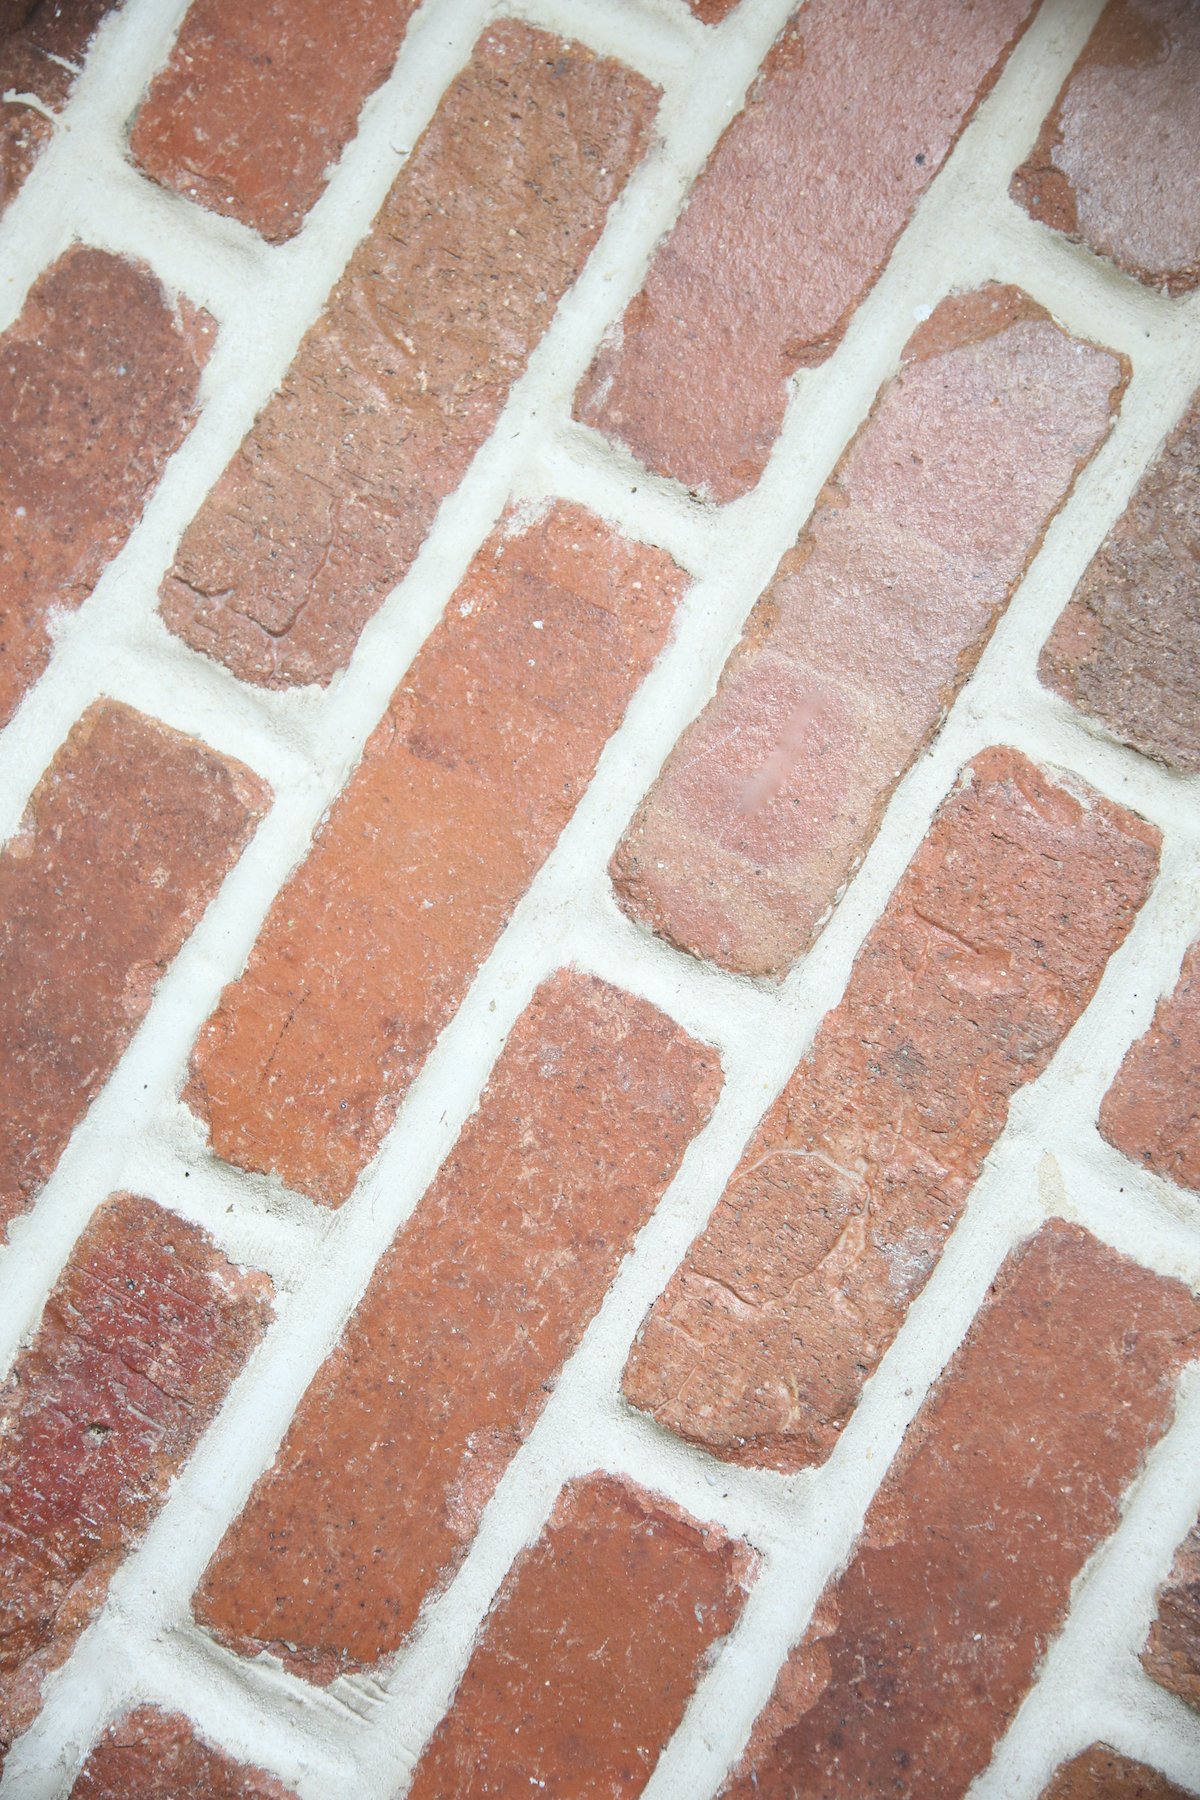 A close up of brick floors. 